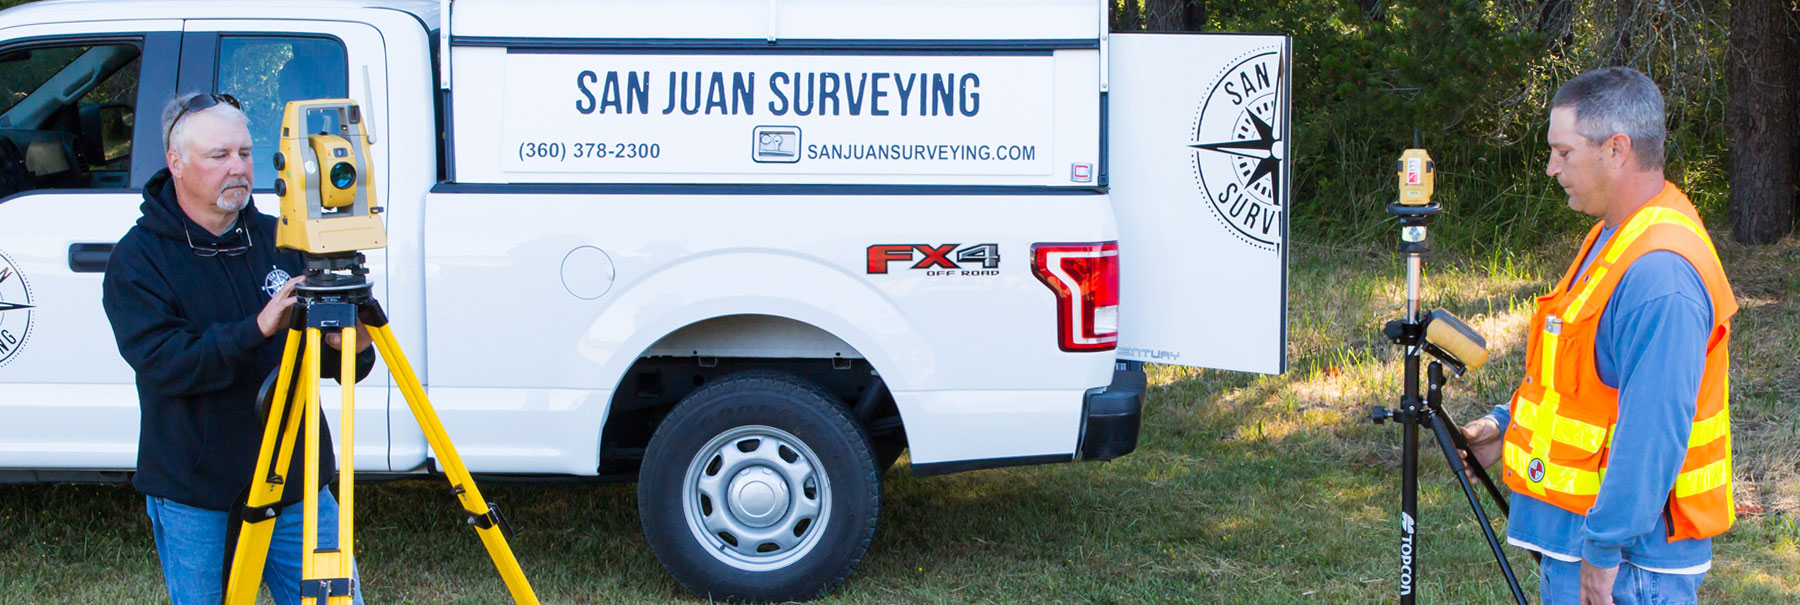 Contact San Juan Surveying